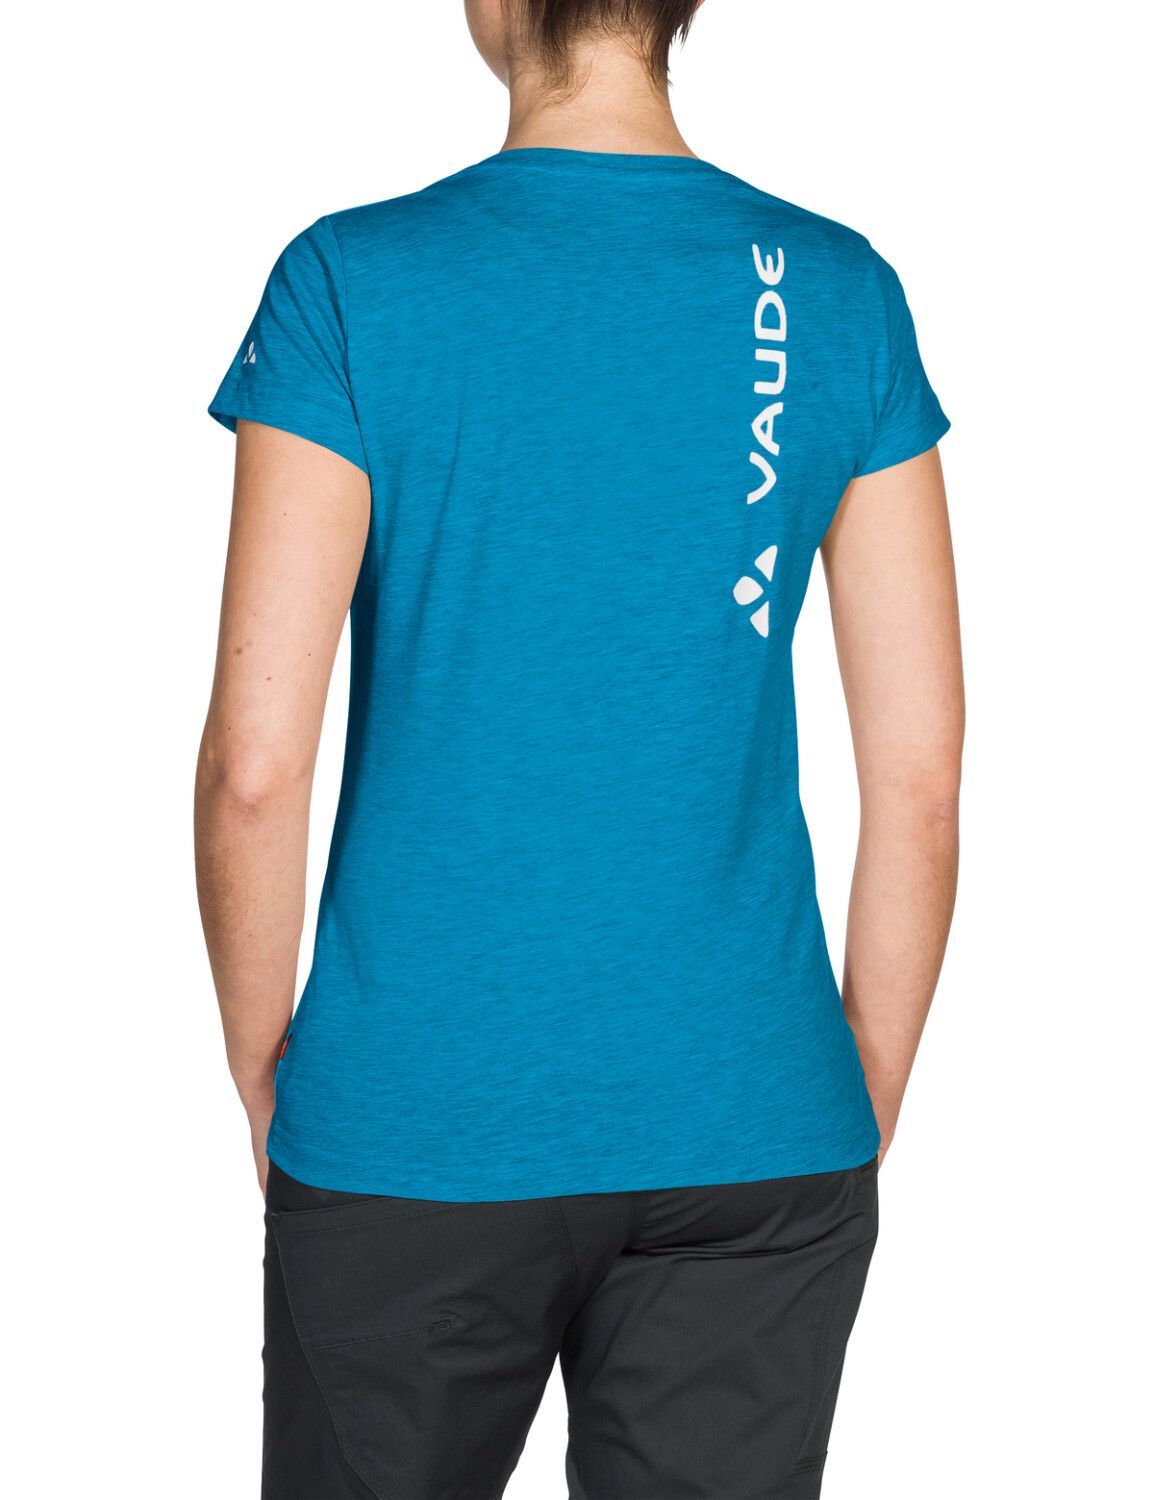 VAUDE Women's Brand Shirt (Bild 28)